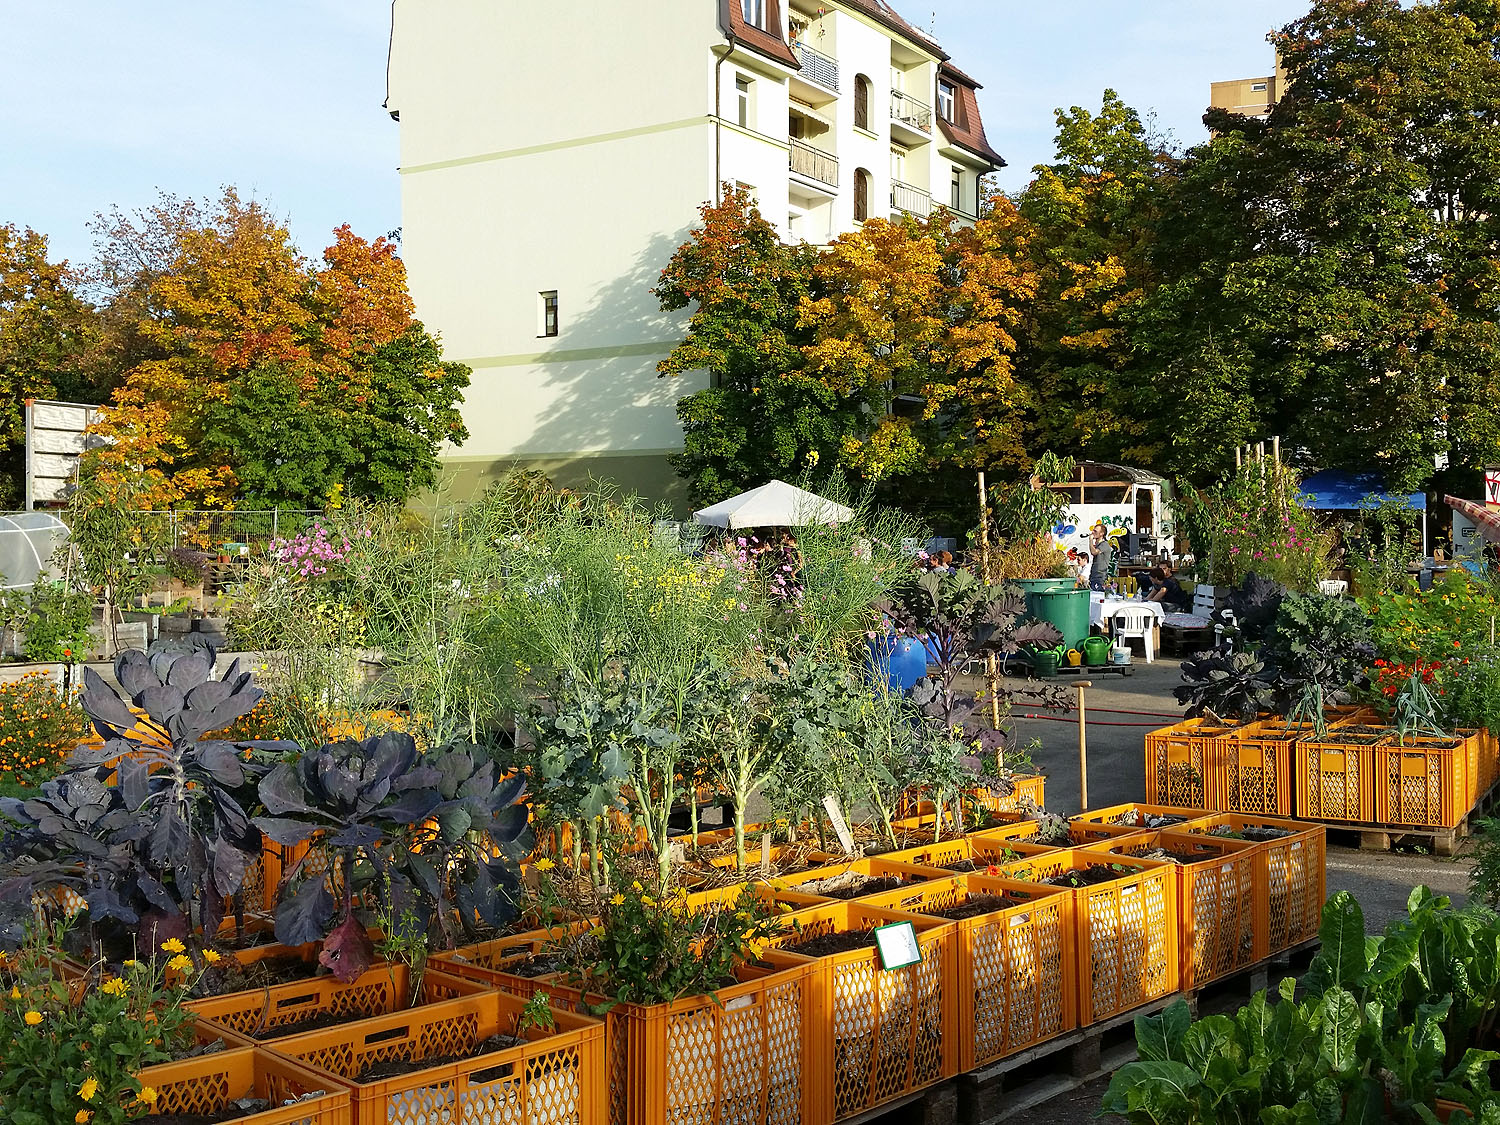 Schwarz, Weiß, Folie - Gartencenter / GrowShop Nürnberg » Urban GardenCenter